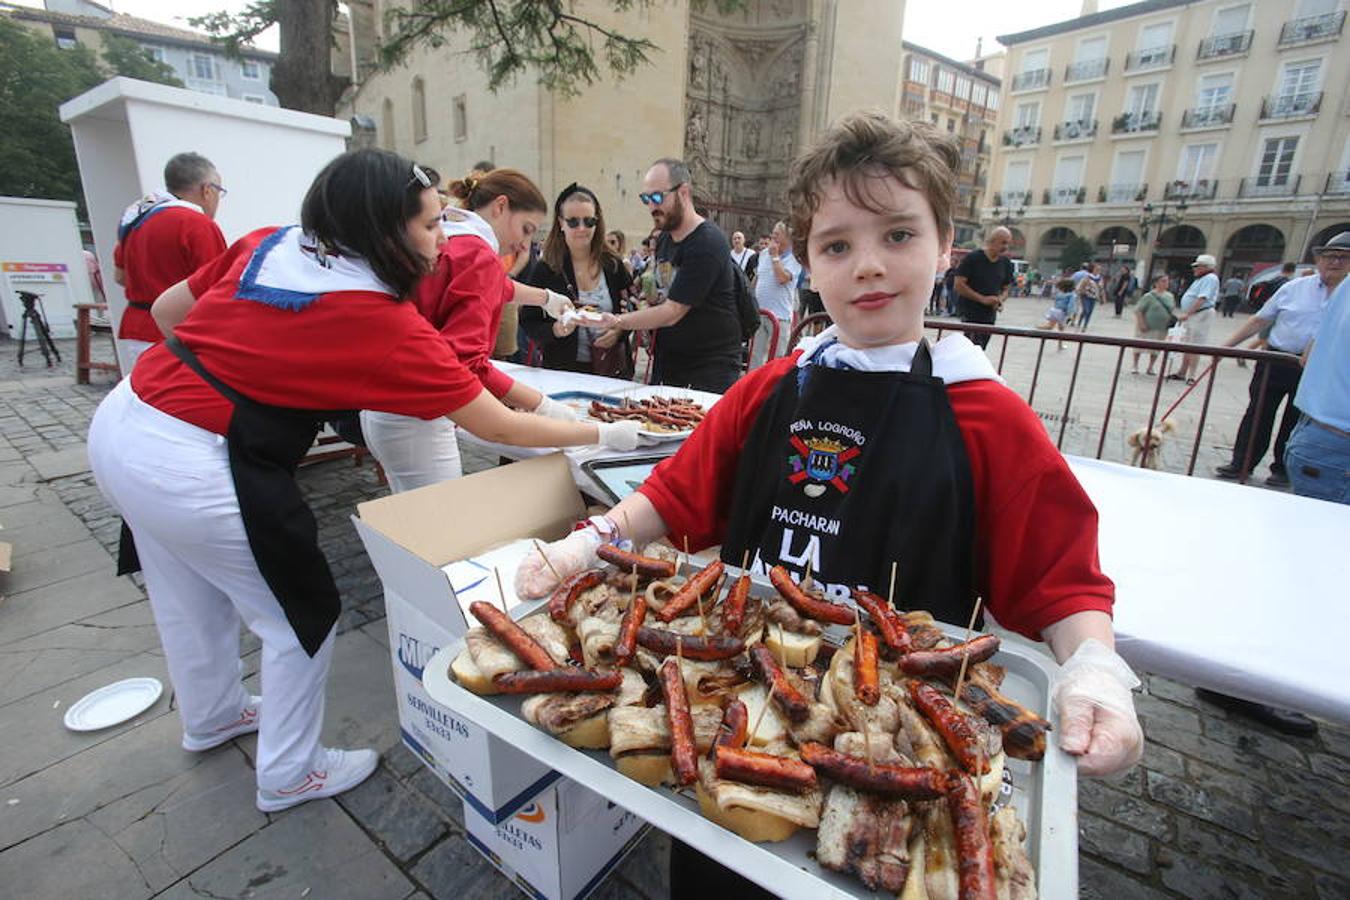 La peña Áster ha sido la encargada de la elaboración de la mañana gastronómica en la Plaza del Mercado de Logroño. Pinchos morunos y choricillo asado han animado a los logroñeses y visitantes a participar del almuerzo.